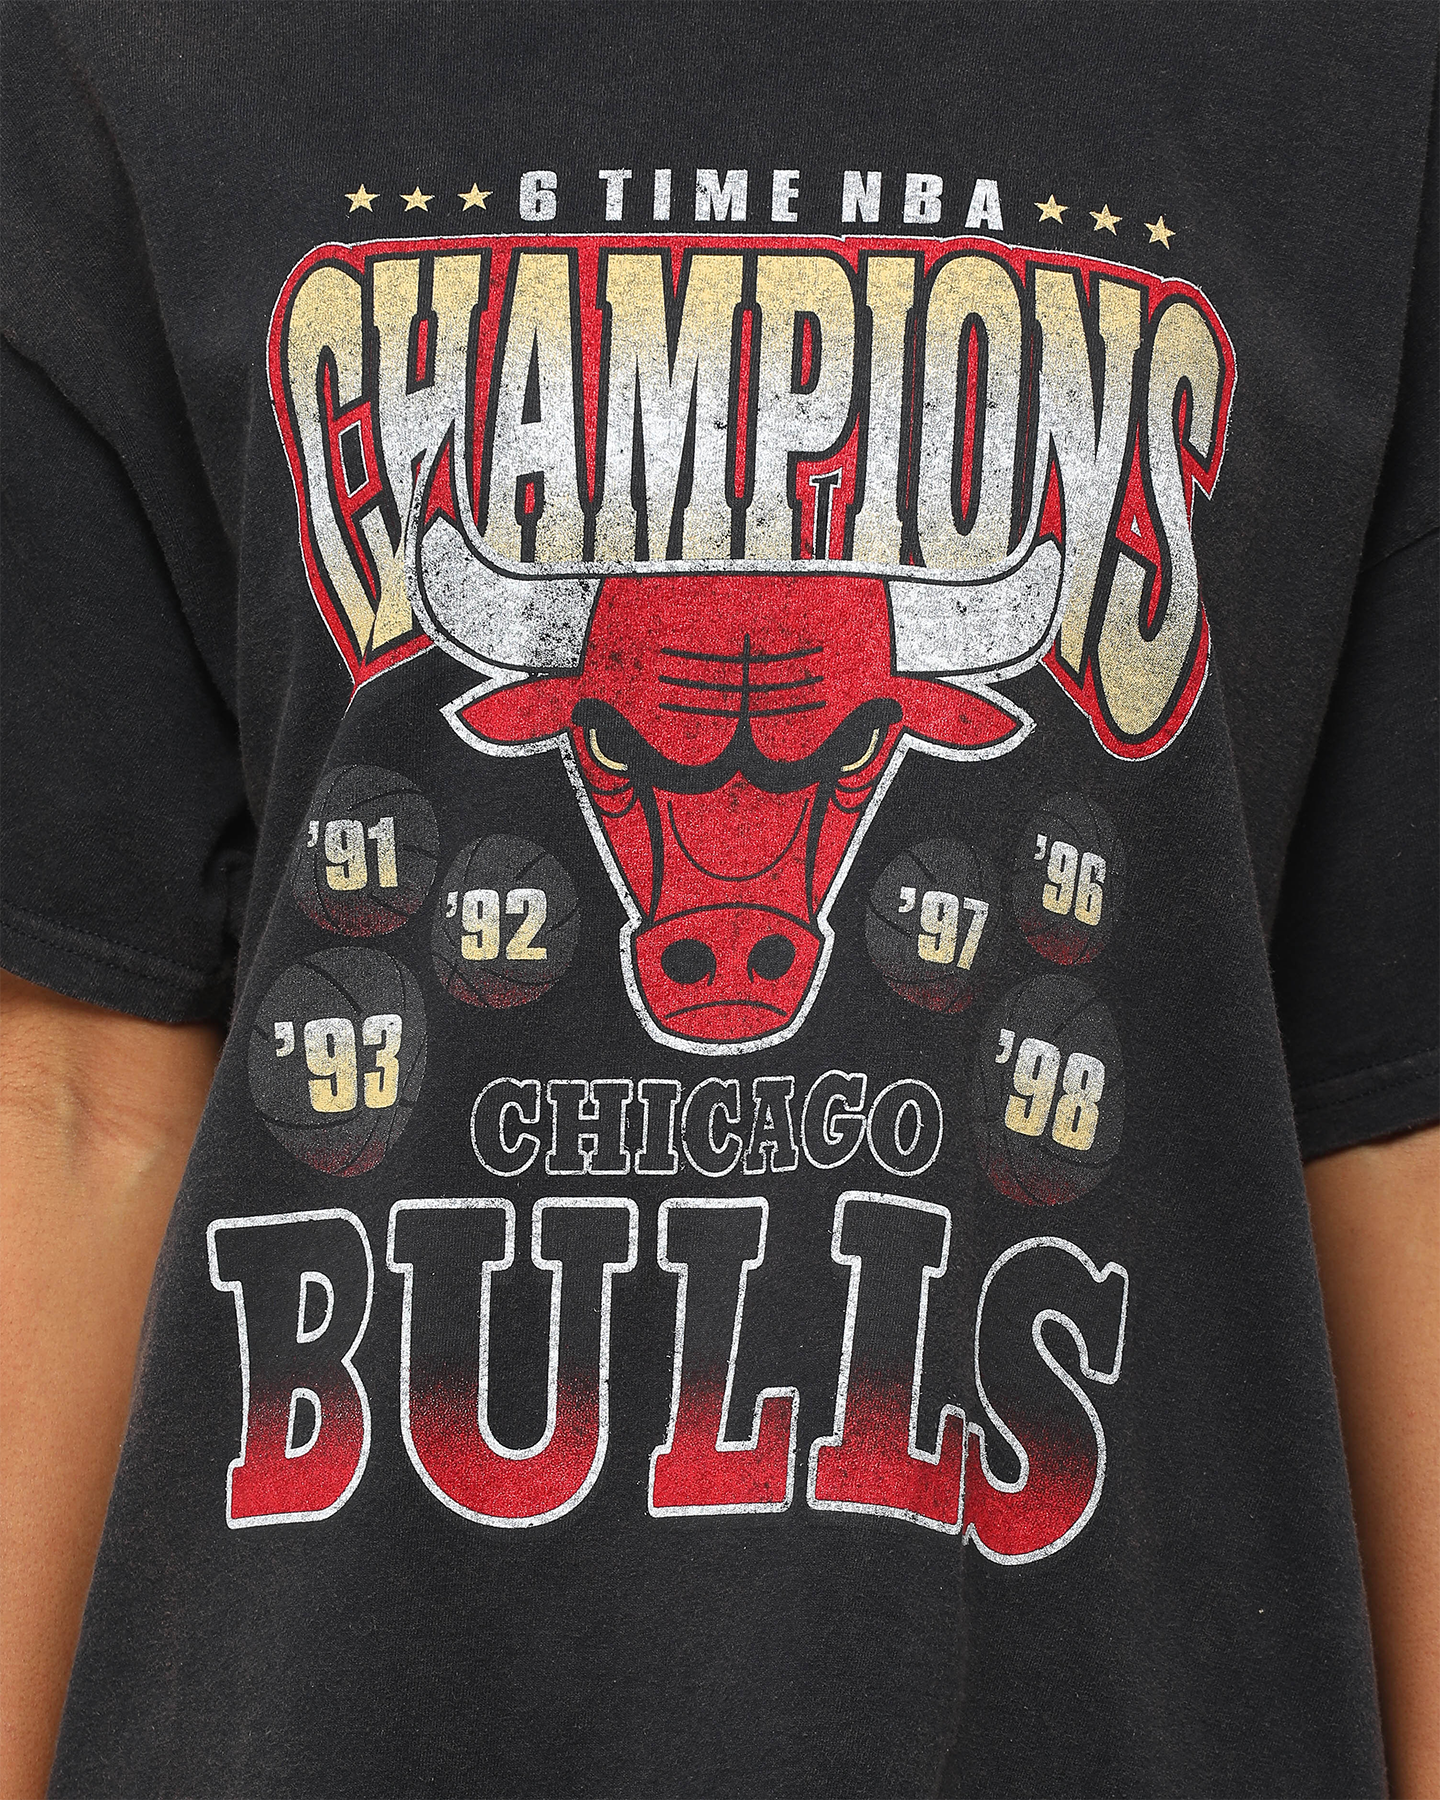 retro bulls shirt